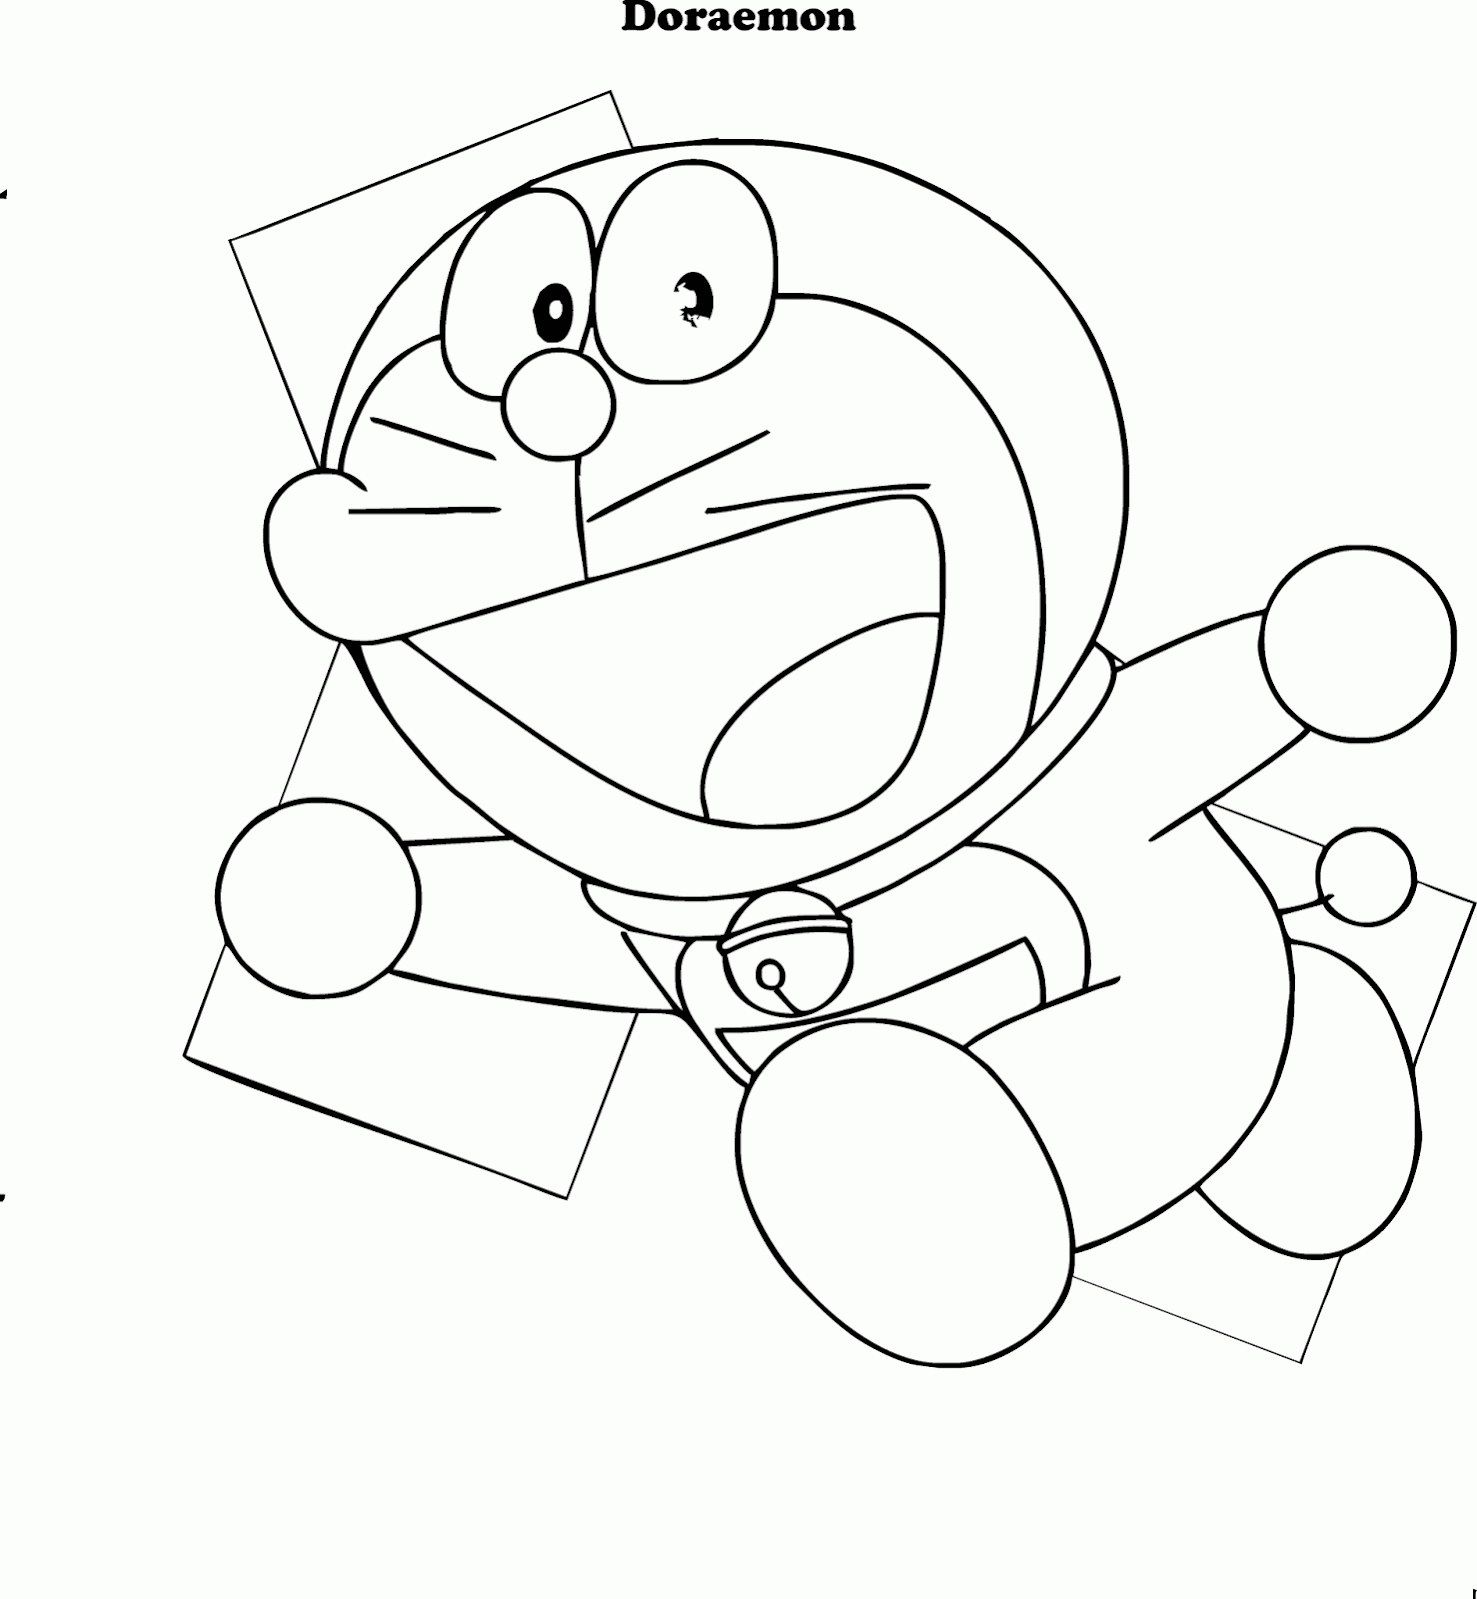 Contoh Gambar Mewarnai Doraemon Gambar Mewarnai Zip Drawing Image